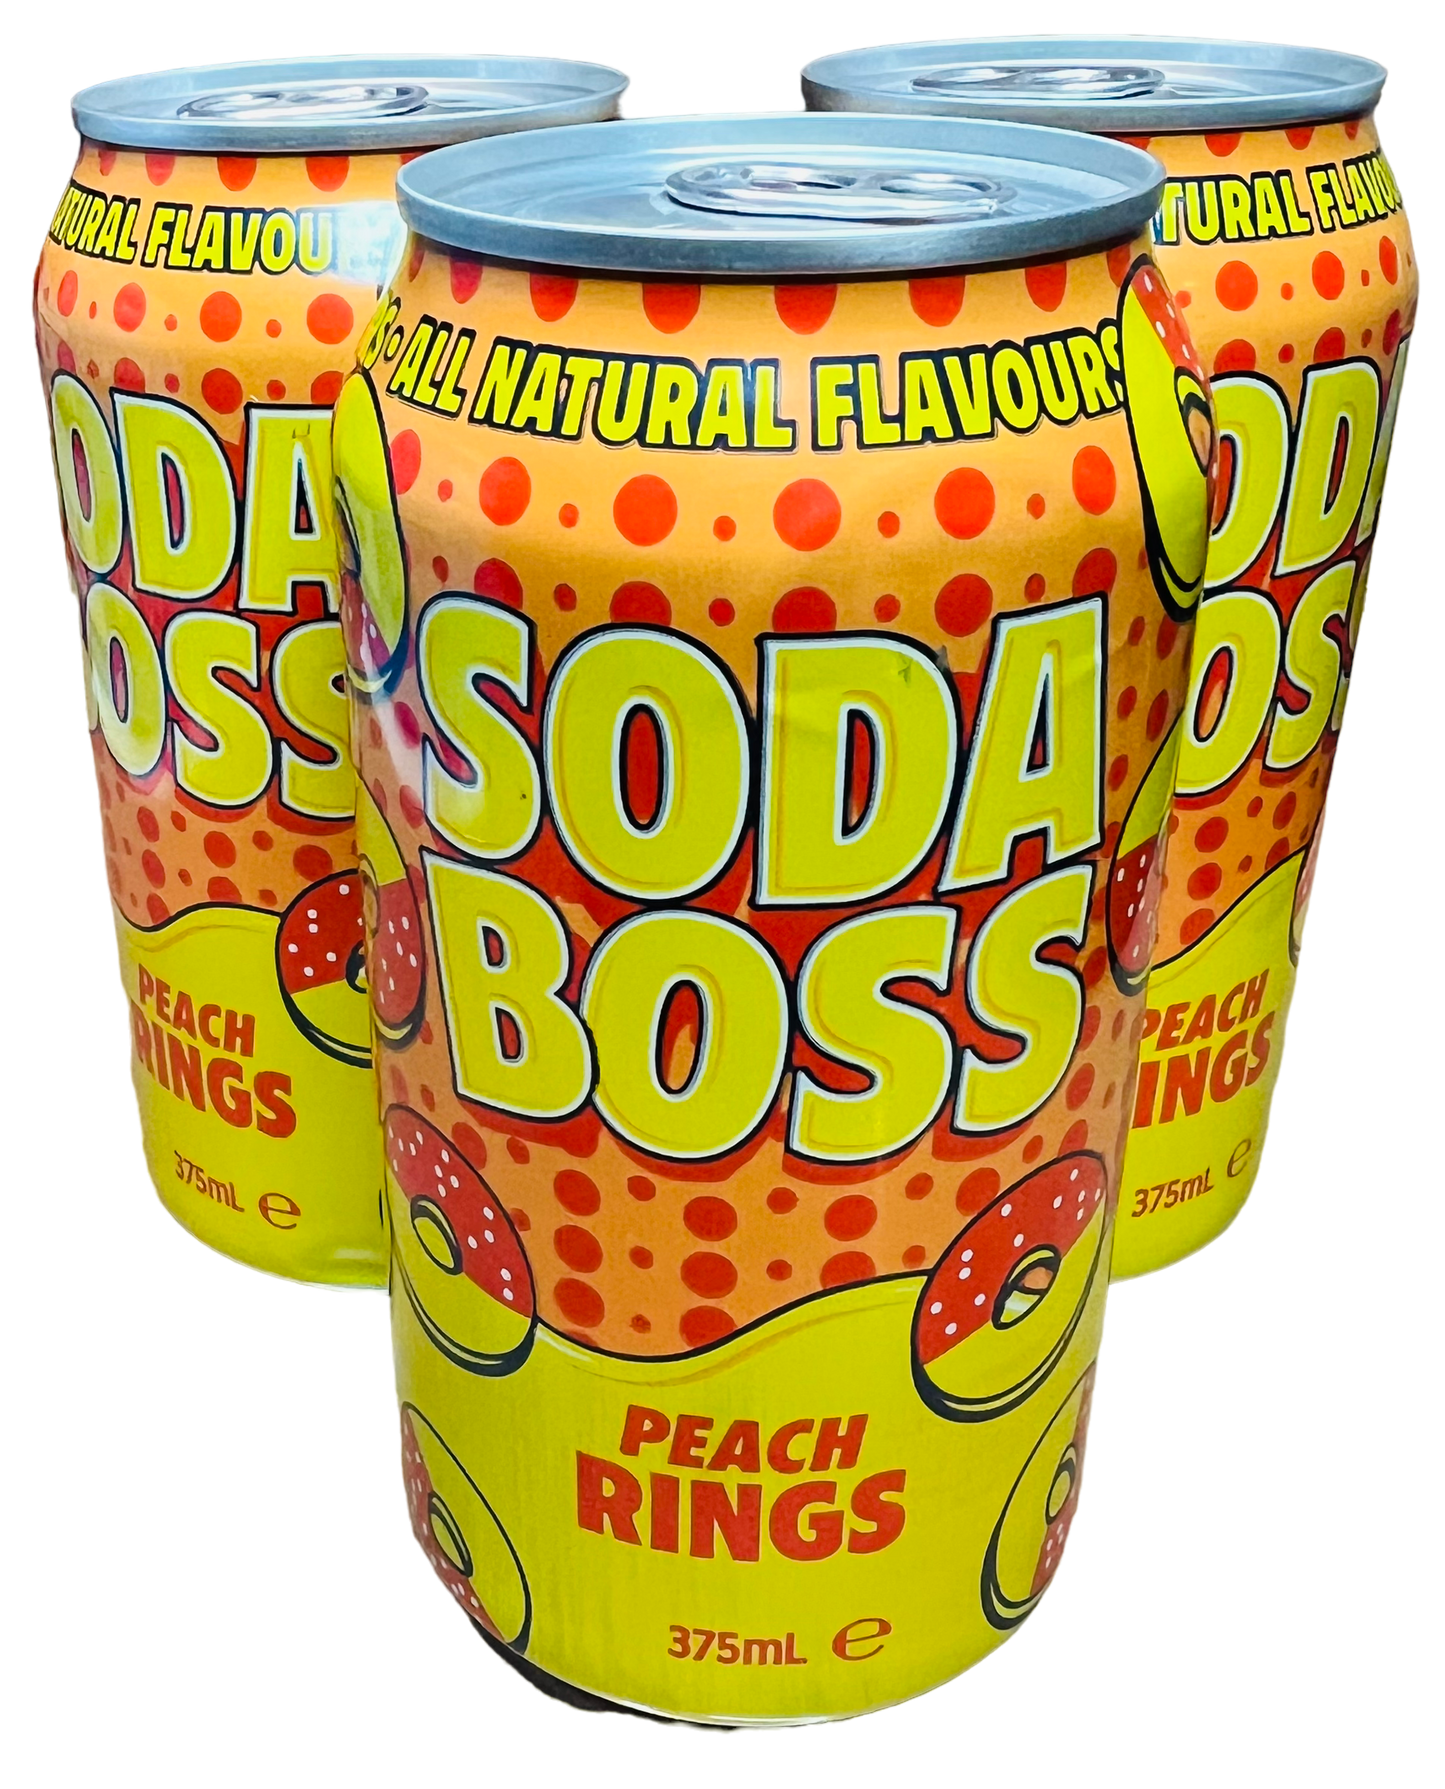 Soda Boss Peach Rings (375ml)